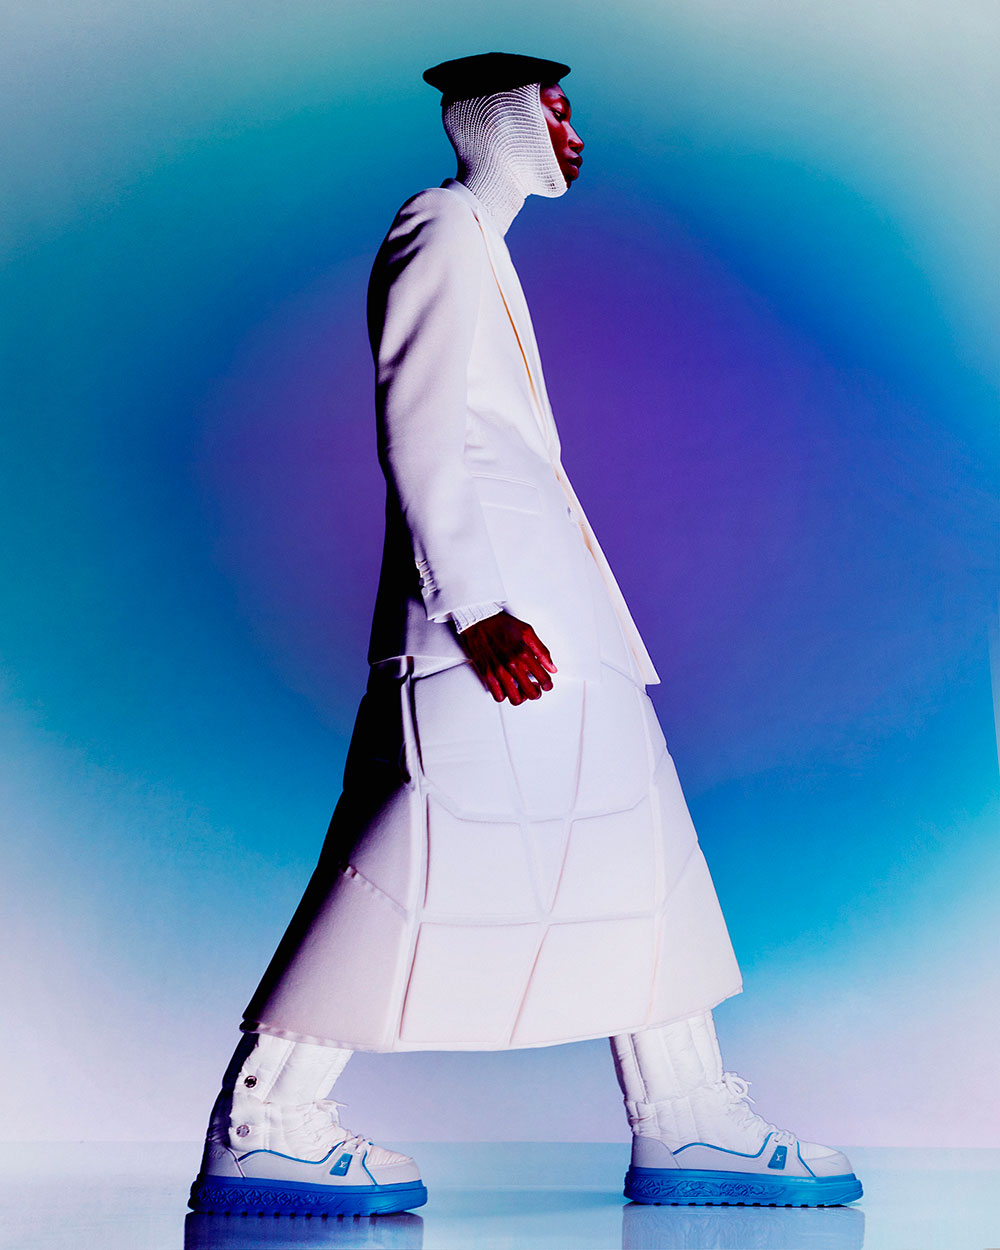 Now Published: Louis Vuitton Tears, Surreal magazine — Paul